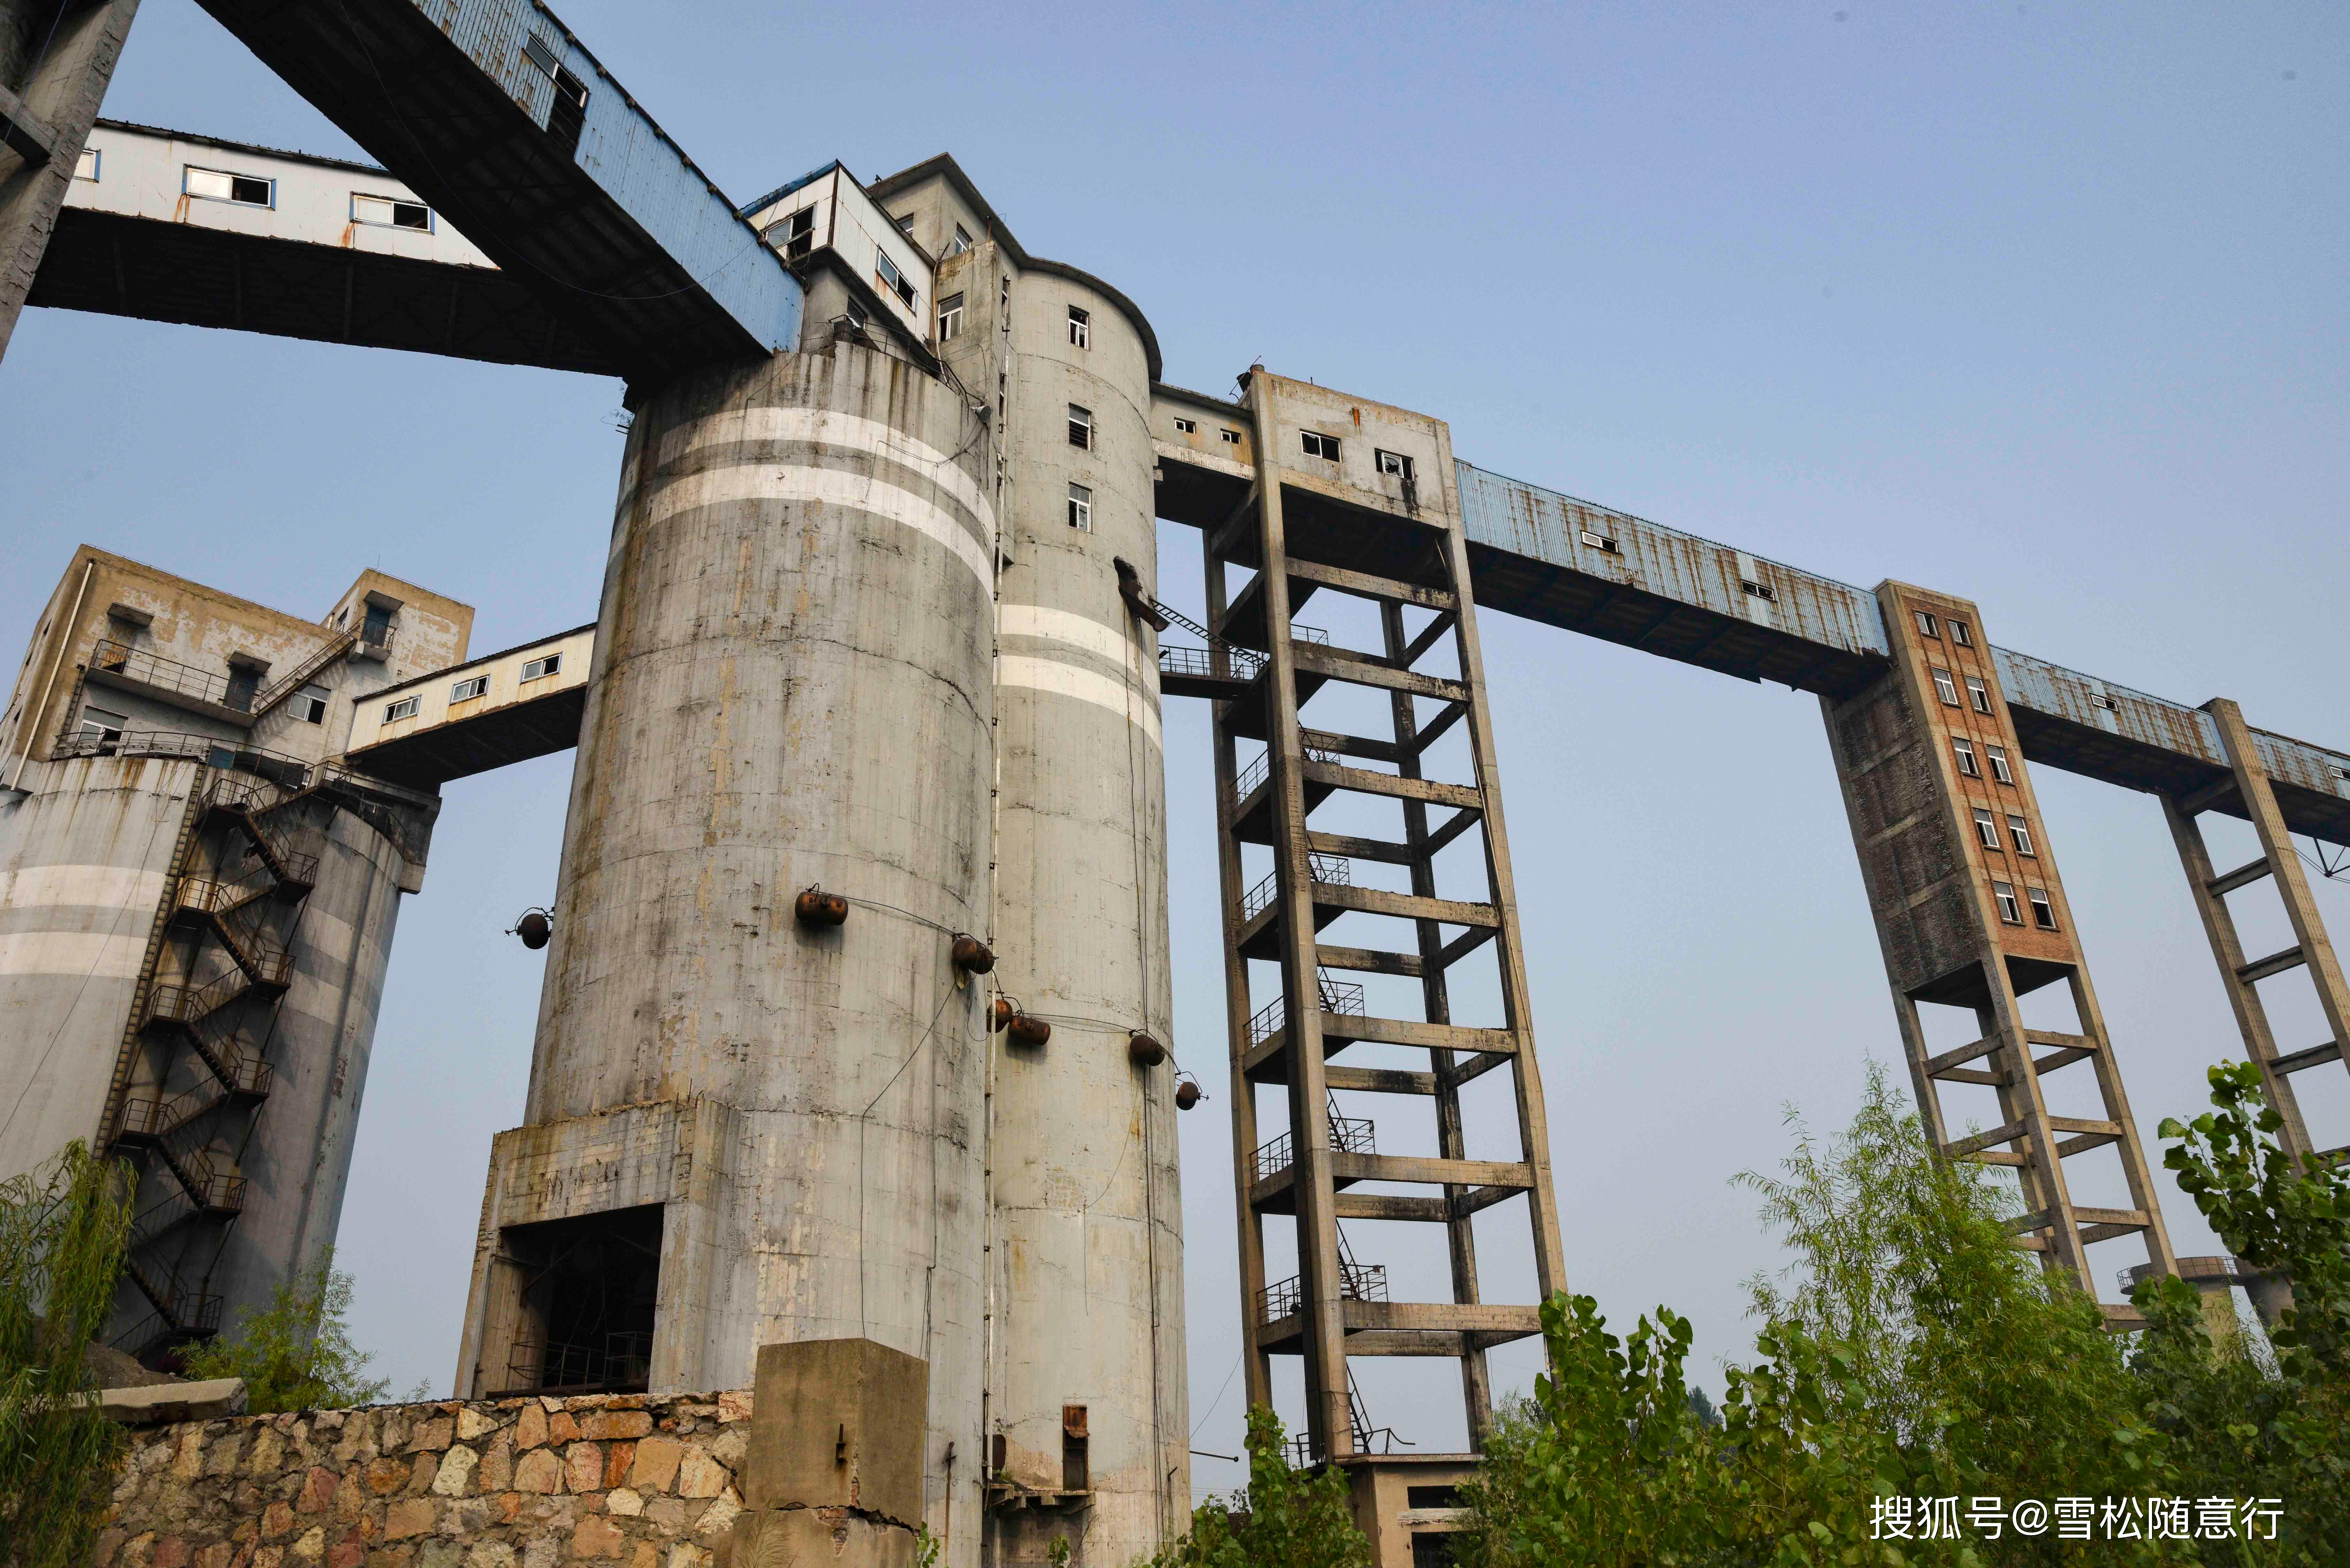 徐州庞庄煤矿张小楼煤矿,曾经日进斗金到资源枯竭,现在已经转型